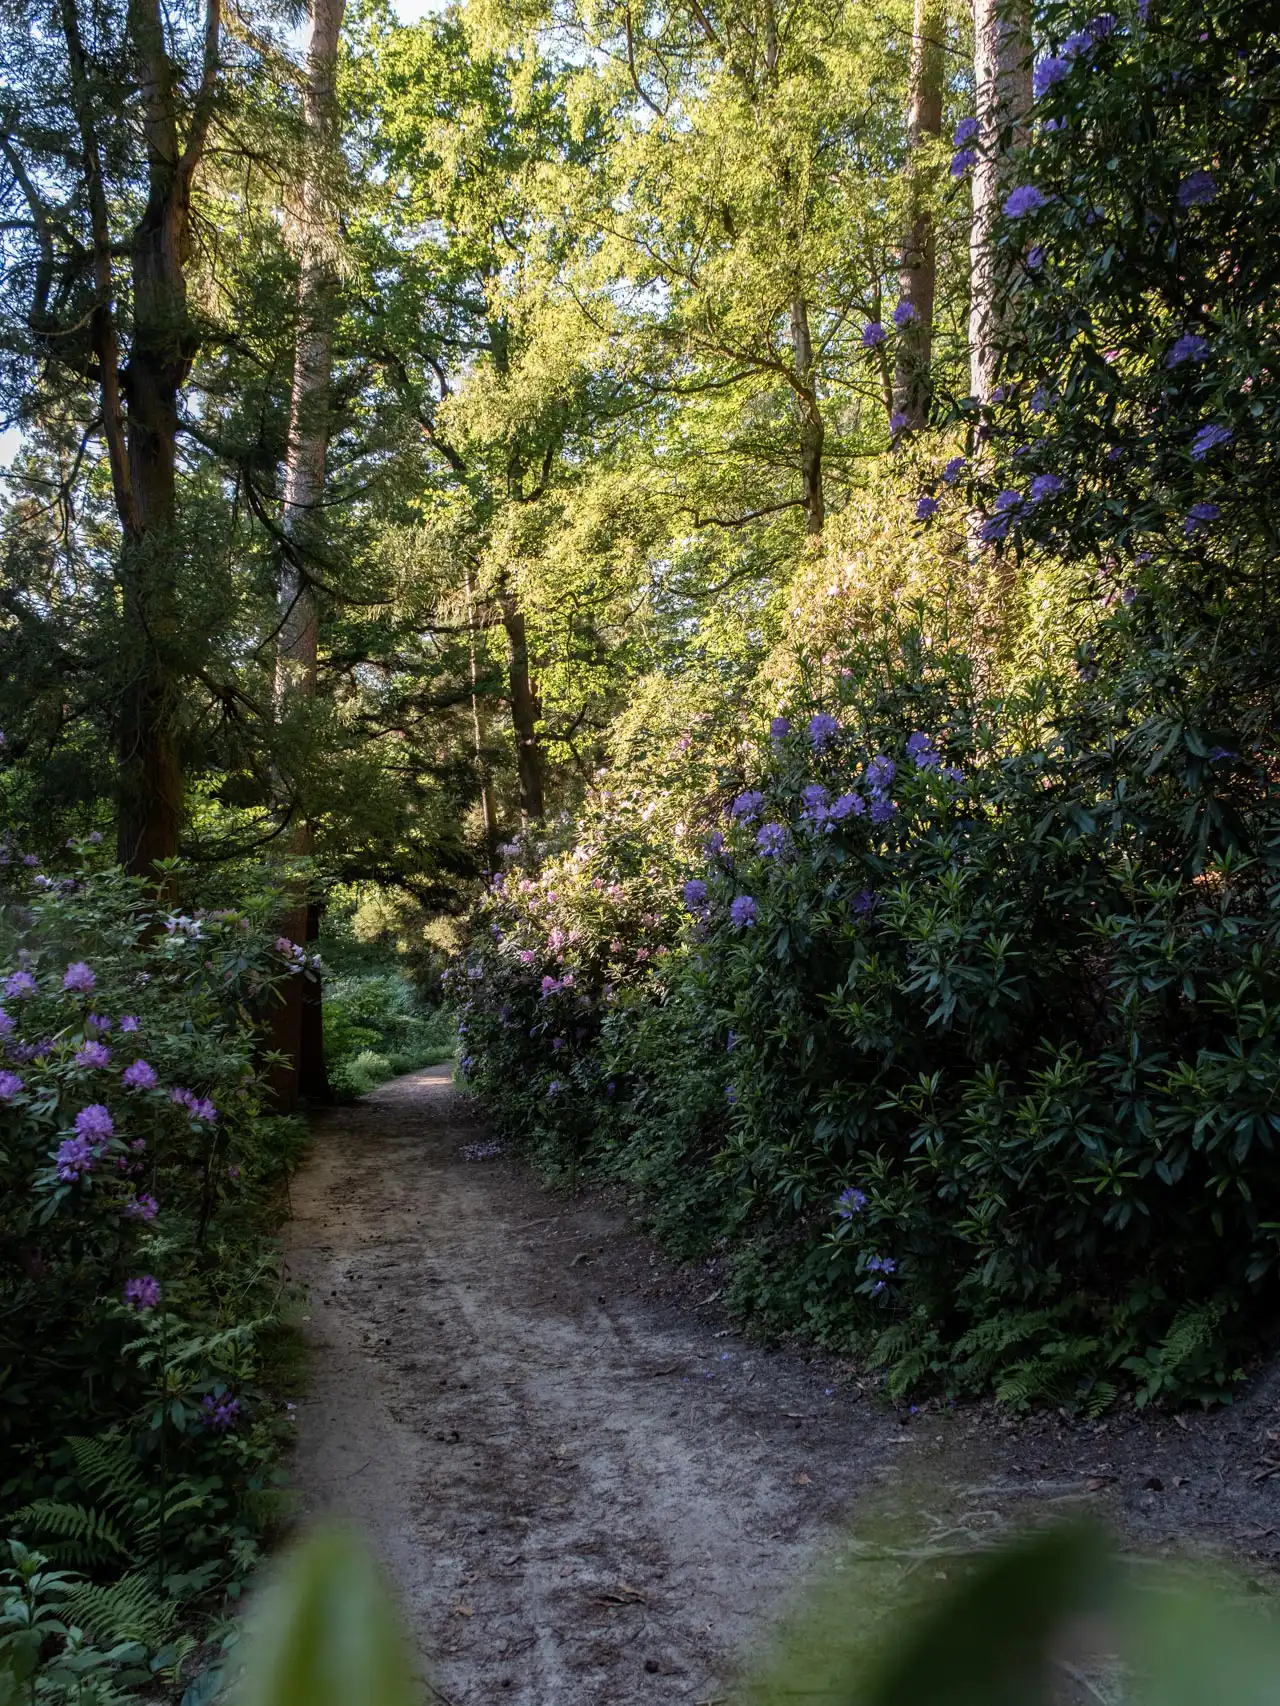 Sentier entouré de rhododendrons mauves en fleurs